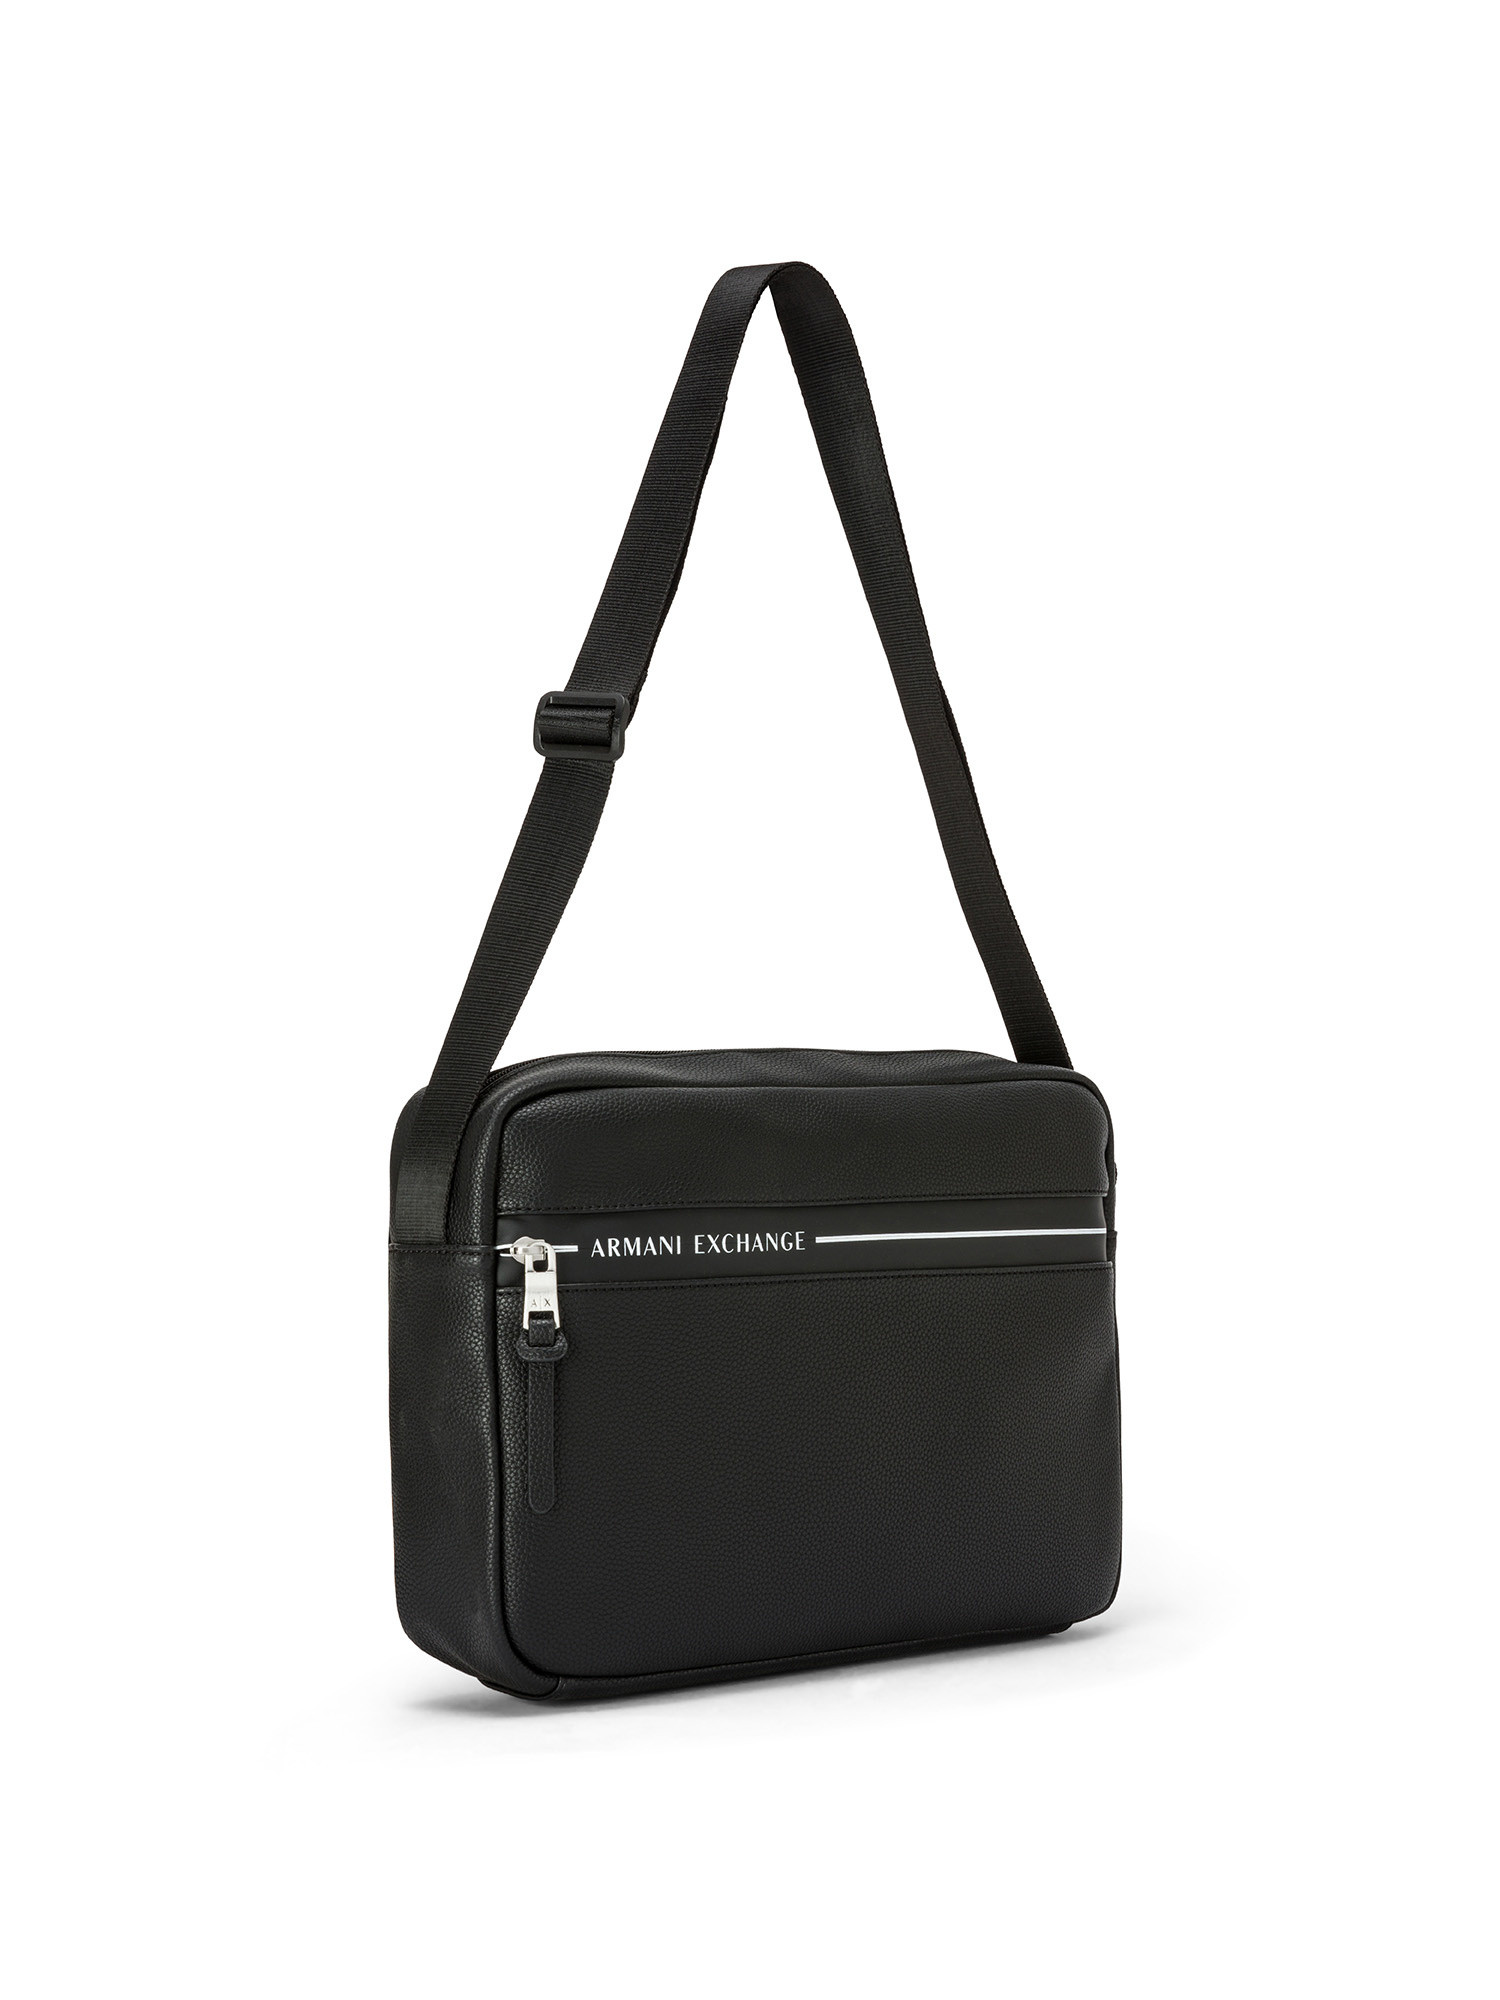 Armani Exchange - Shoulder bag with logo, Black, large image number 1